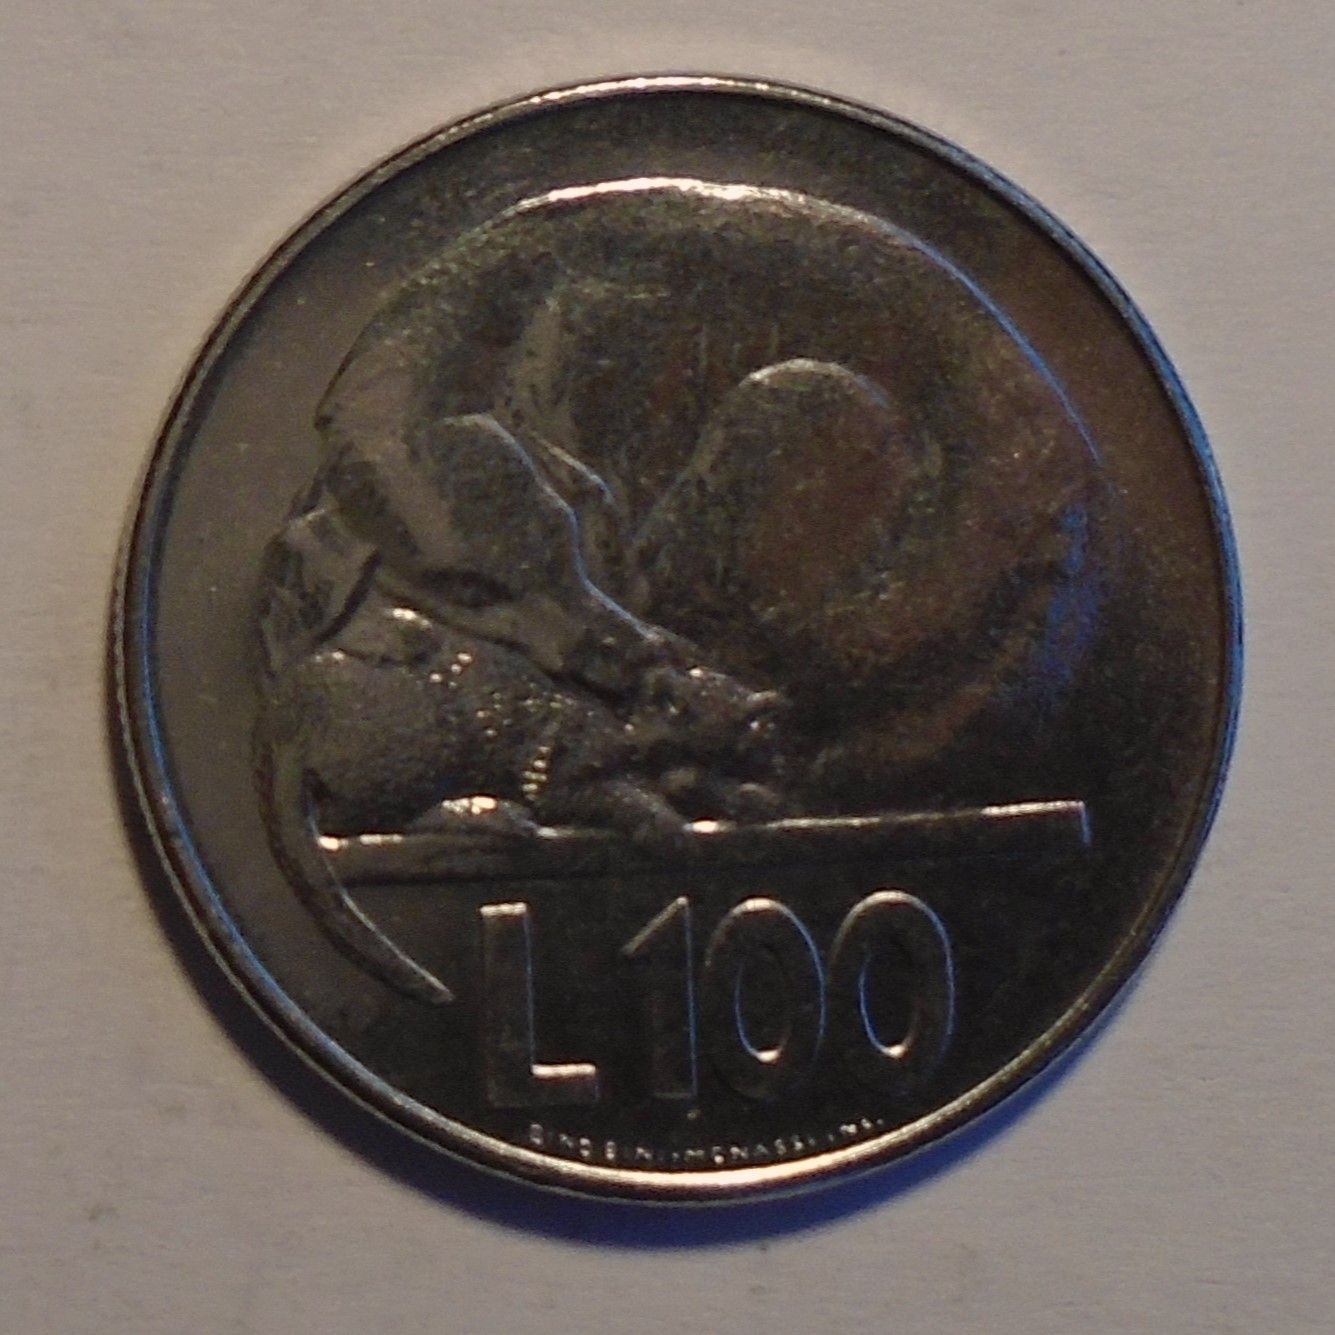 Vatikán 100 Lir 1975